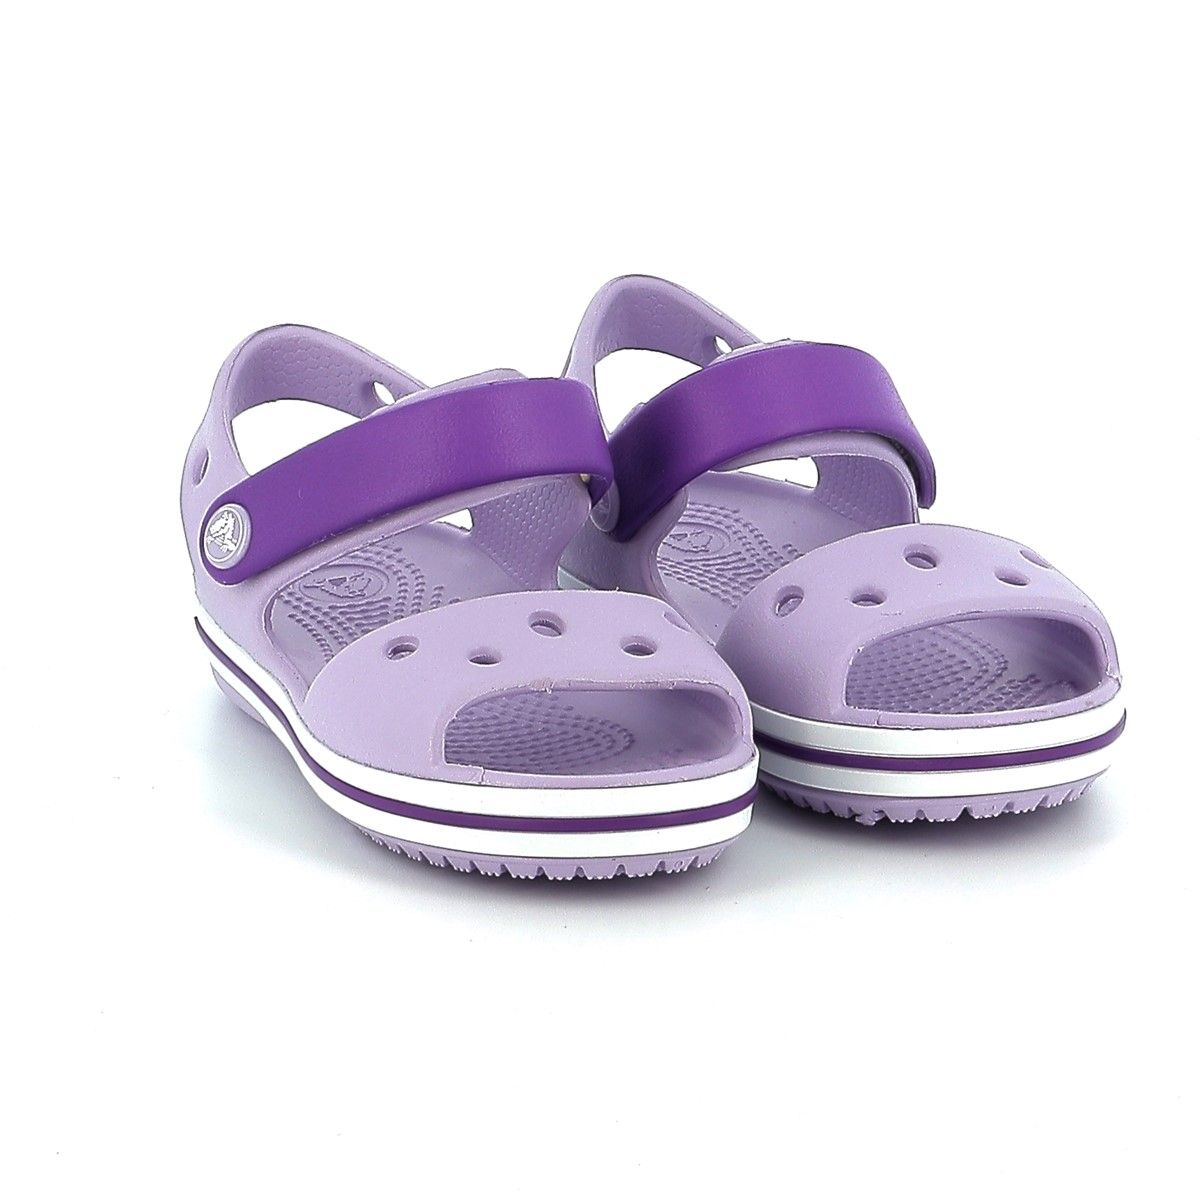 Παιδικό Πέδιλο για Κορίτσι Ανατομικό Crocs  Crocband Sandal Χρώματος Μωβ 12856-5P8